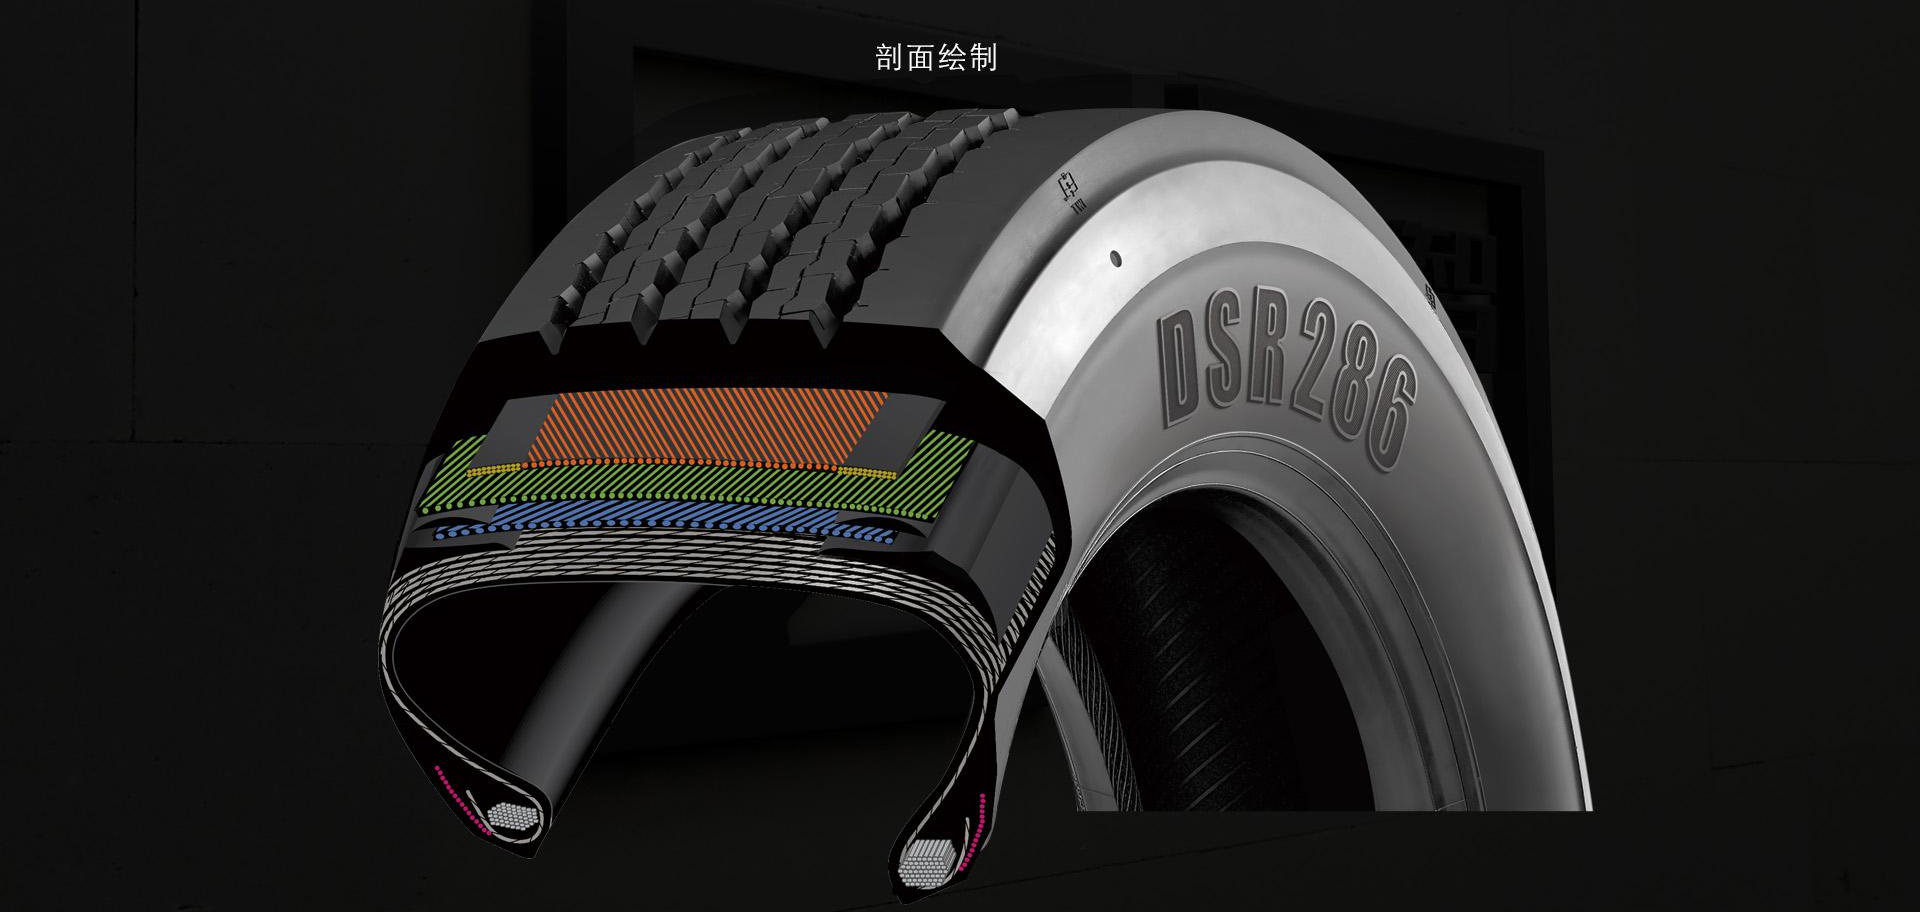 双星轮胎品牌策划设计-产品图侧面绘制